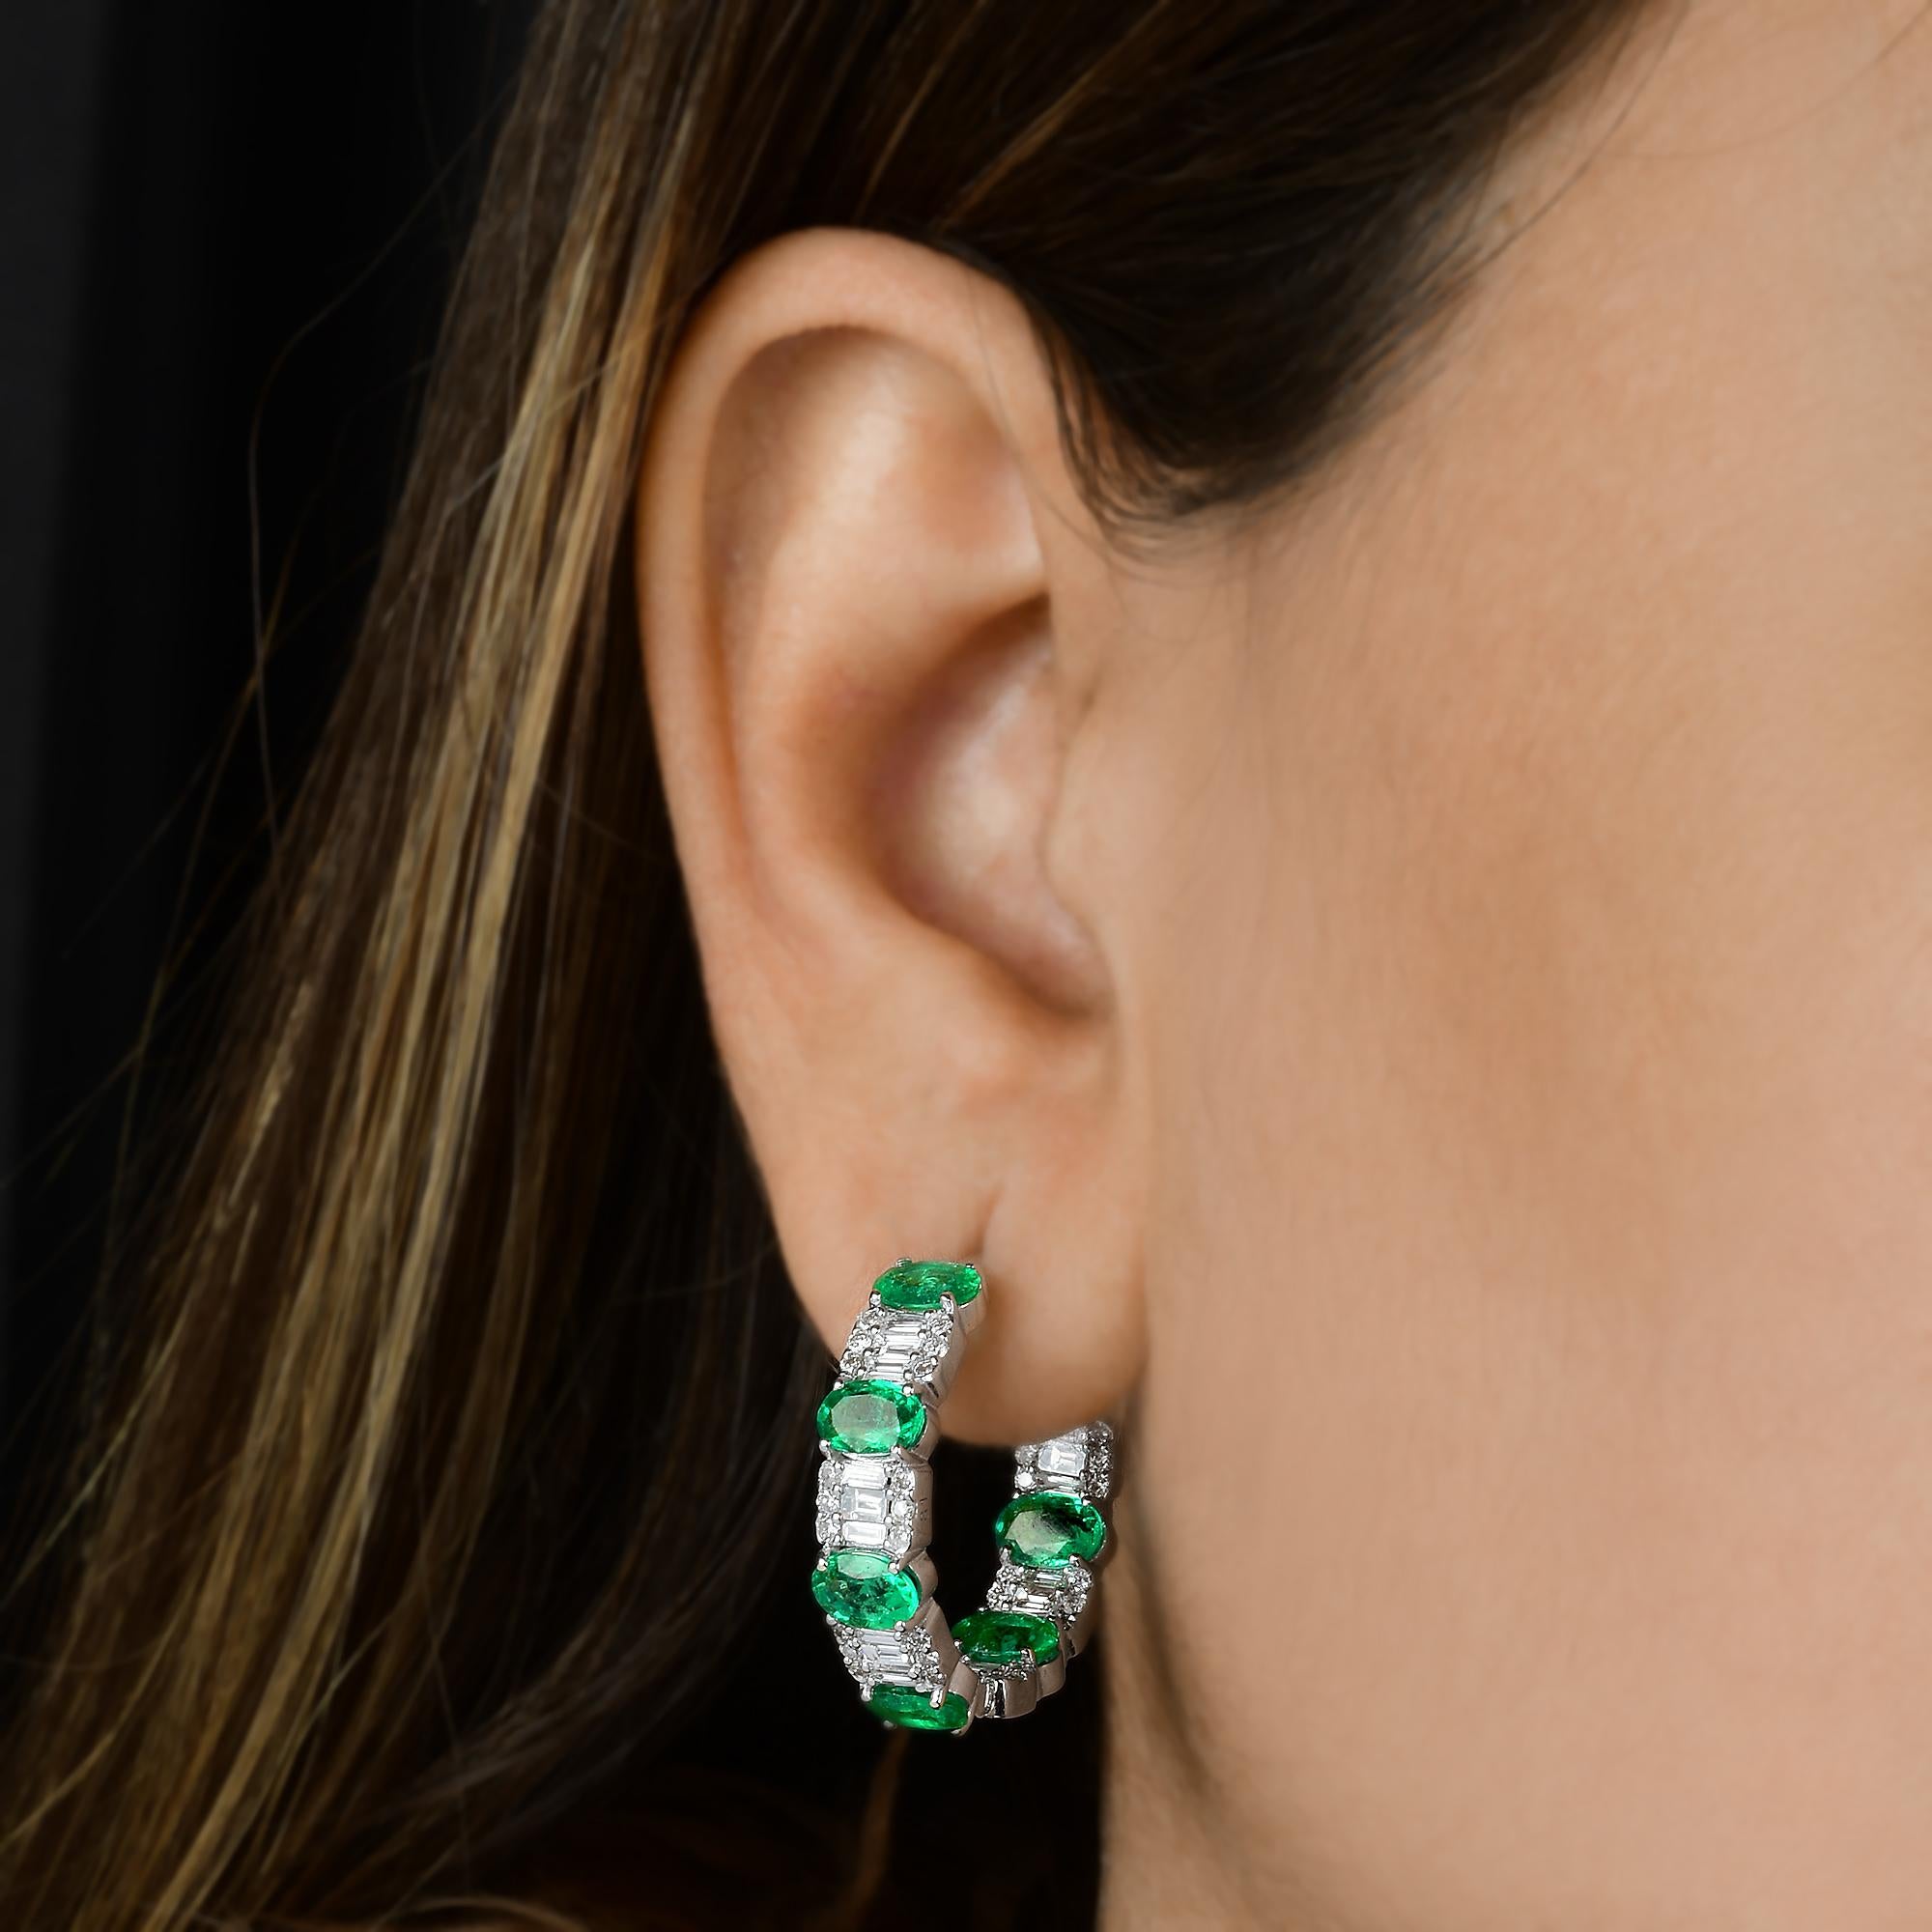 Oval Cut Real Zambian Emerald Gemstone Hoop Earrings Diamond 18 Karat White Gold Jewelry For Sale